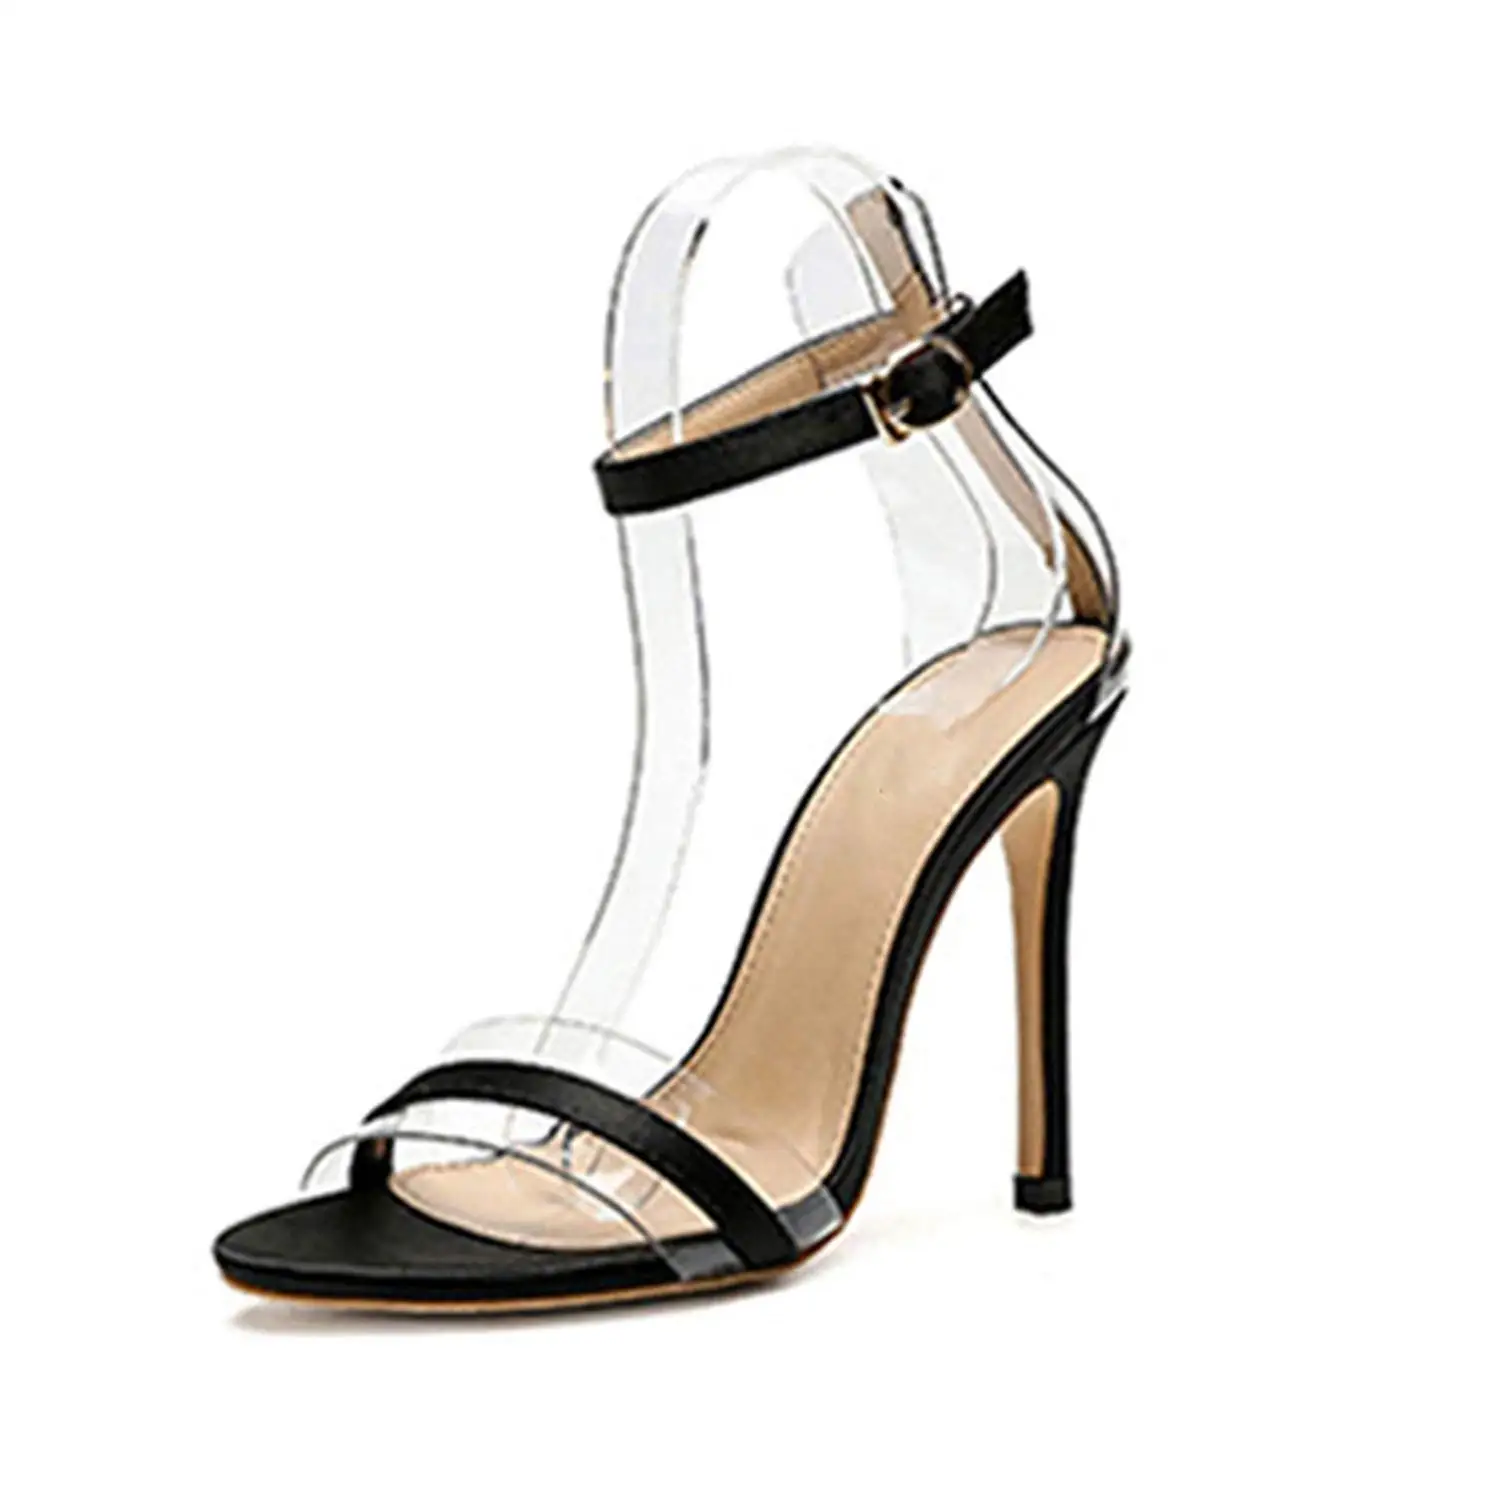 Buy Rage summer shoes black bordeaux 8cm heel shoes women shoes sandal ...